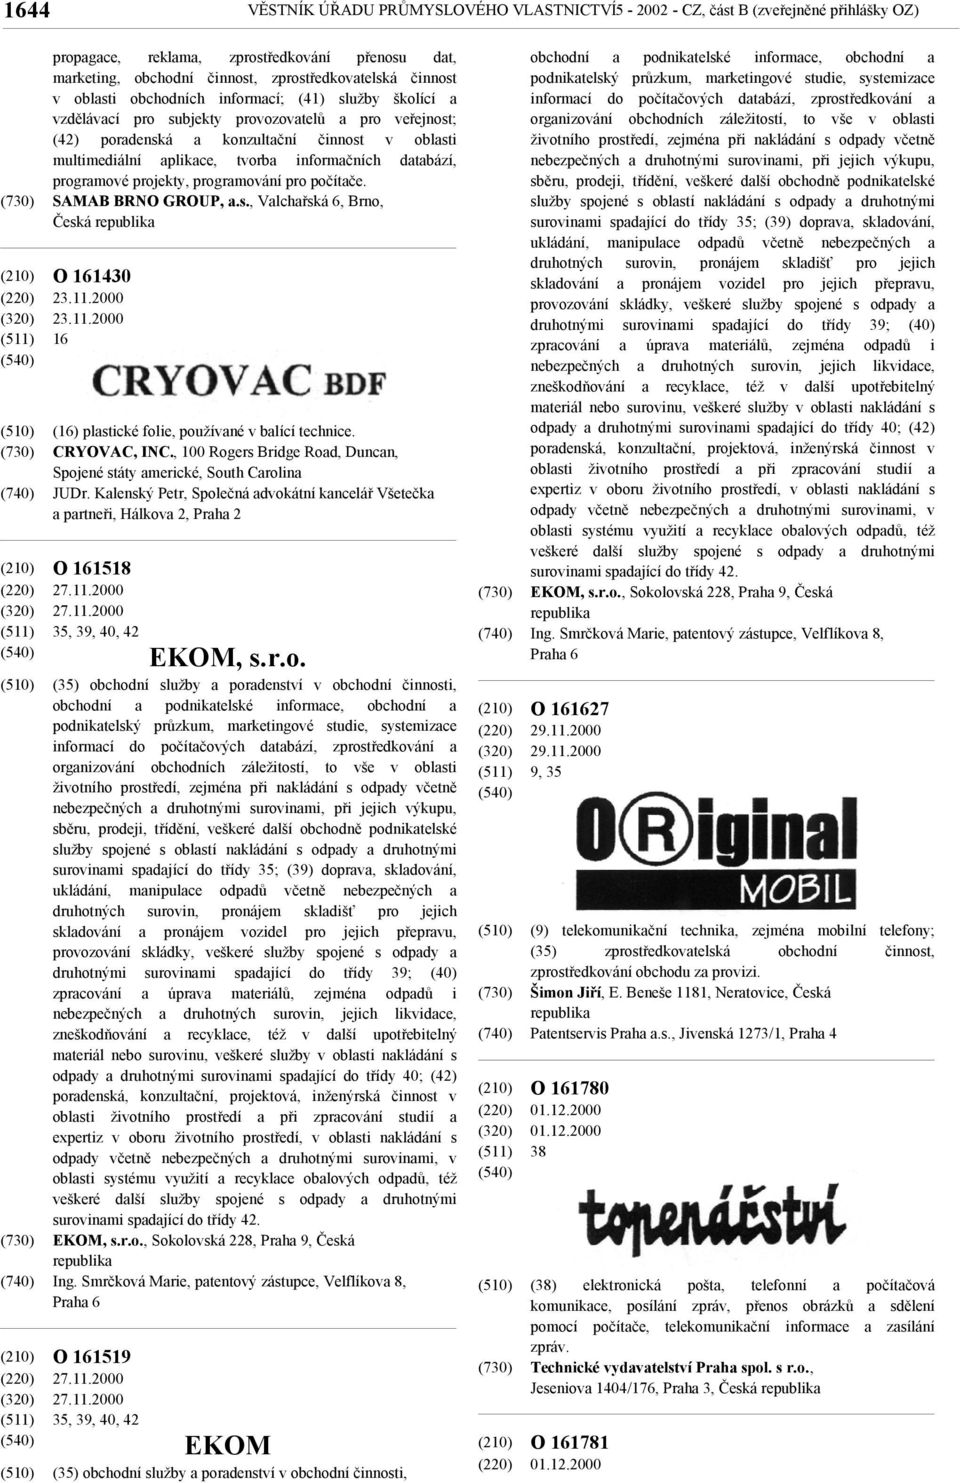 databází, programové projekty, programování pro počítače. SAMAB BRNO GROUP, a.s., Valchařská 6, Brno, Česká O 161430 23.11.2000 23.11.2000 16 (16) plastické folie, používané v balící technice.